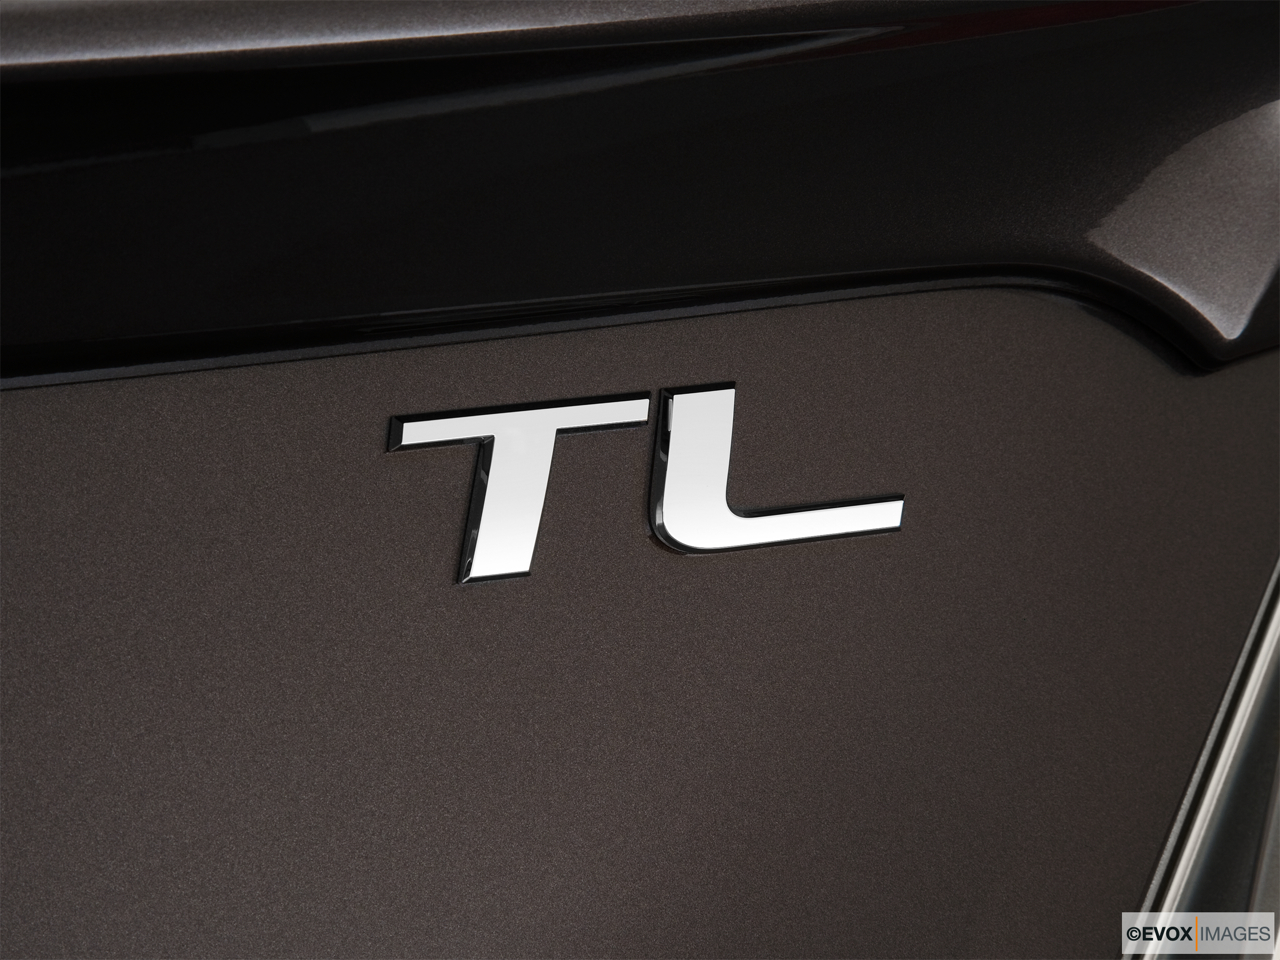 2010 Acura TL TL Rear model badge/emblem 